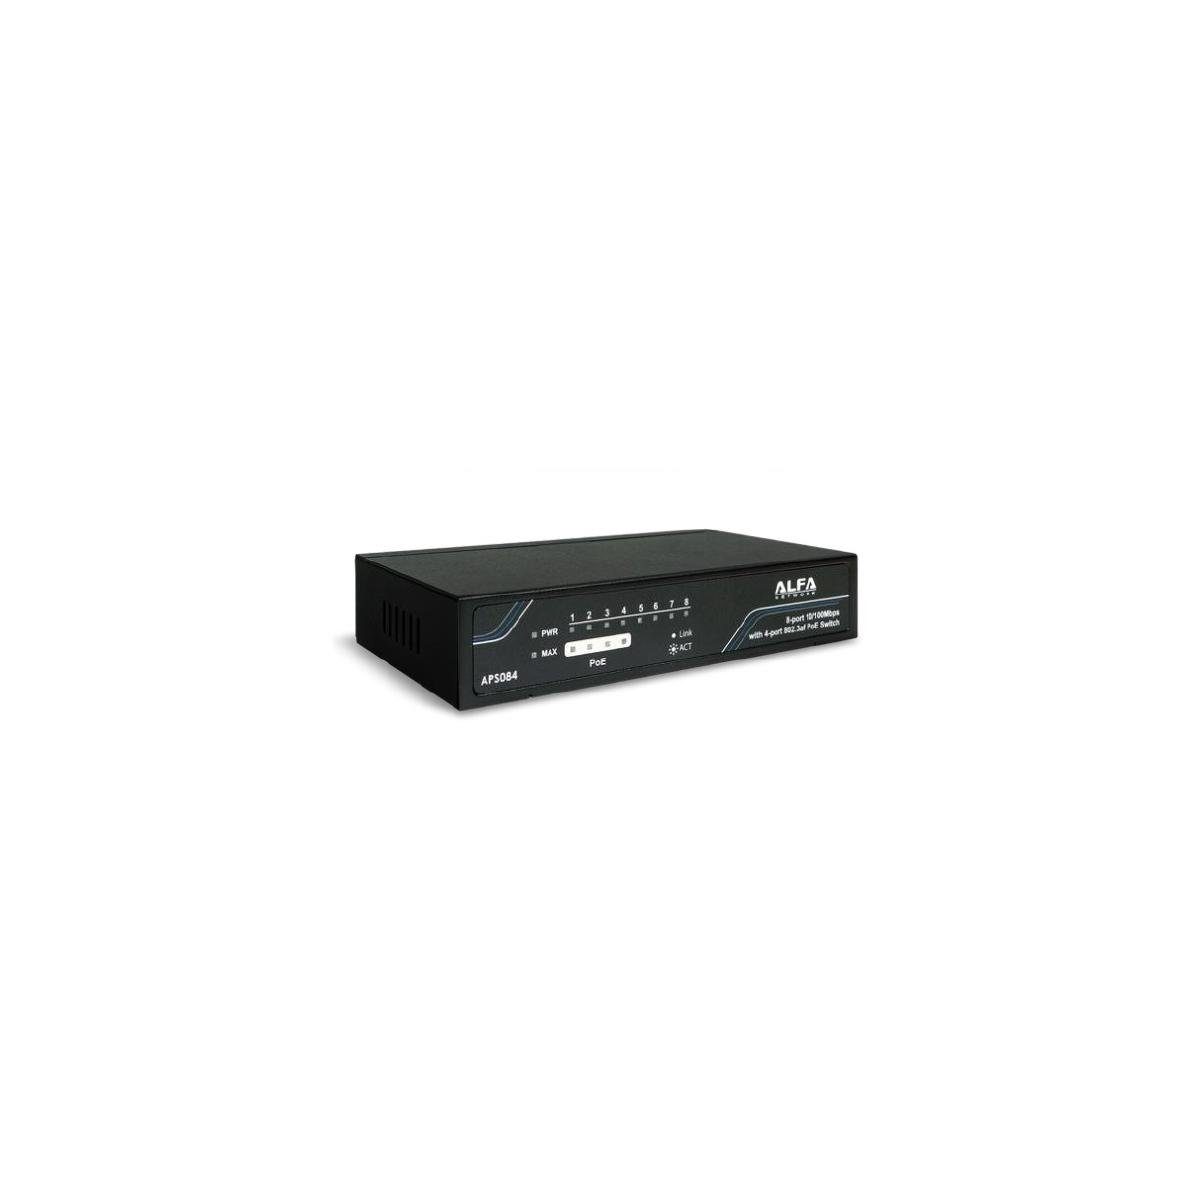 Alfa APS084 - Desktop 8-Port Ethernet 10/100 Mbps Switch, Netzwerk-Switch mit